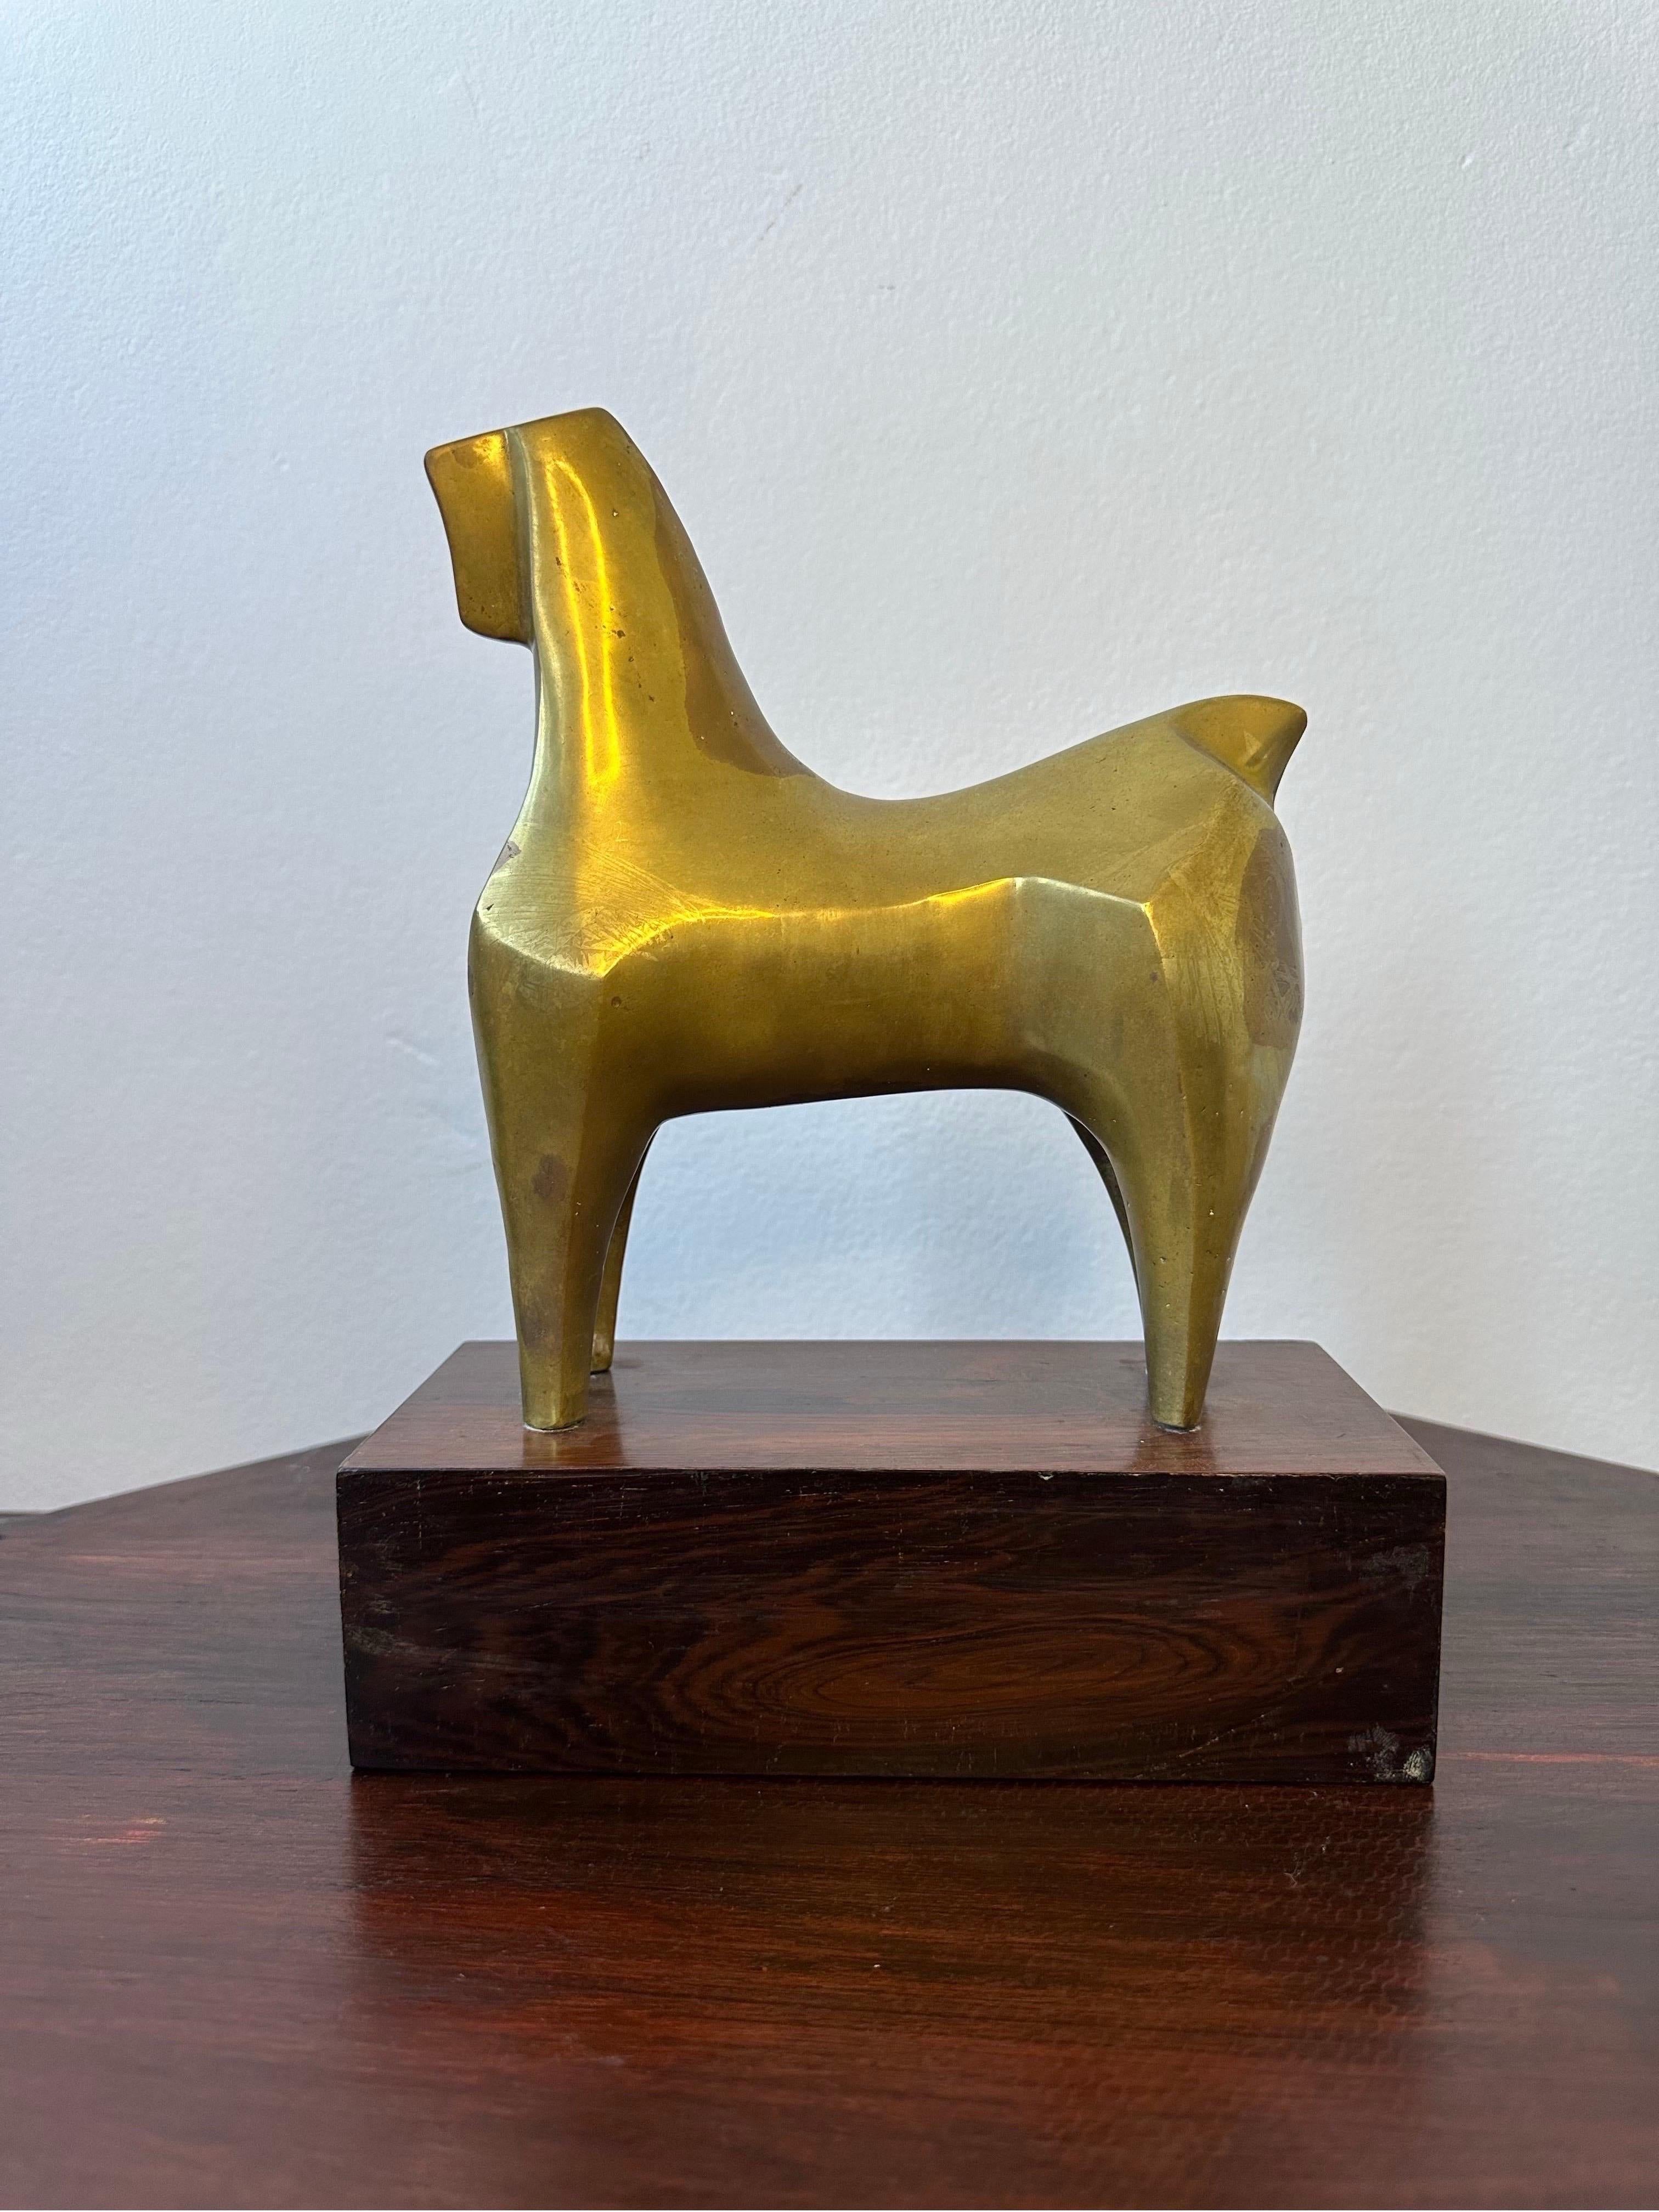 Sculpture moderniste brésilienne en bronze représentant un cheval sur une base en jacaranda, circa 1960.  Le cheval géométrique en bronze à âme creuse témoigne du mouvement artistique moderniste du Brésil des années 1960.  Le cheval en bronze est